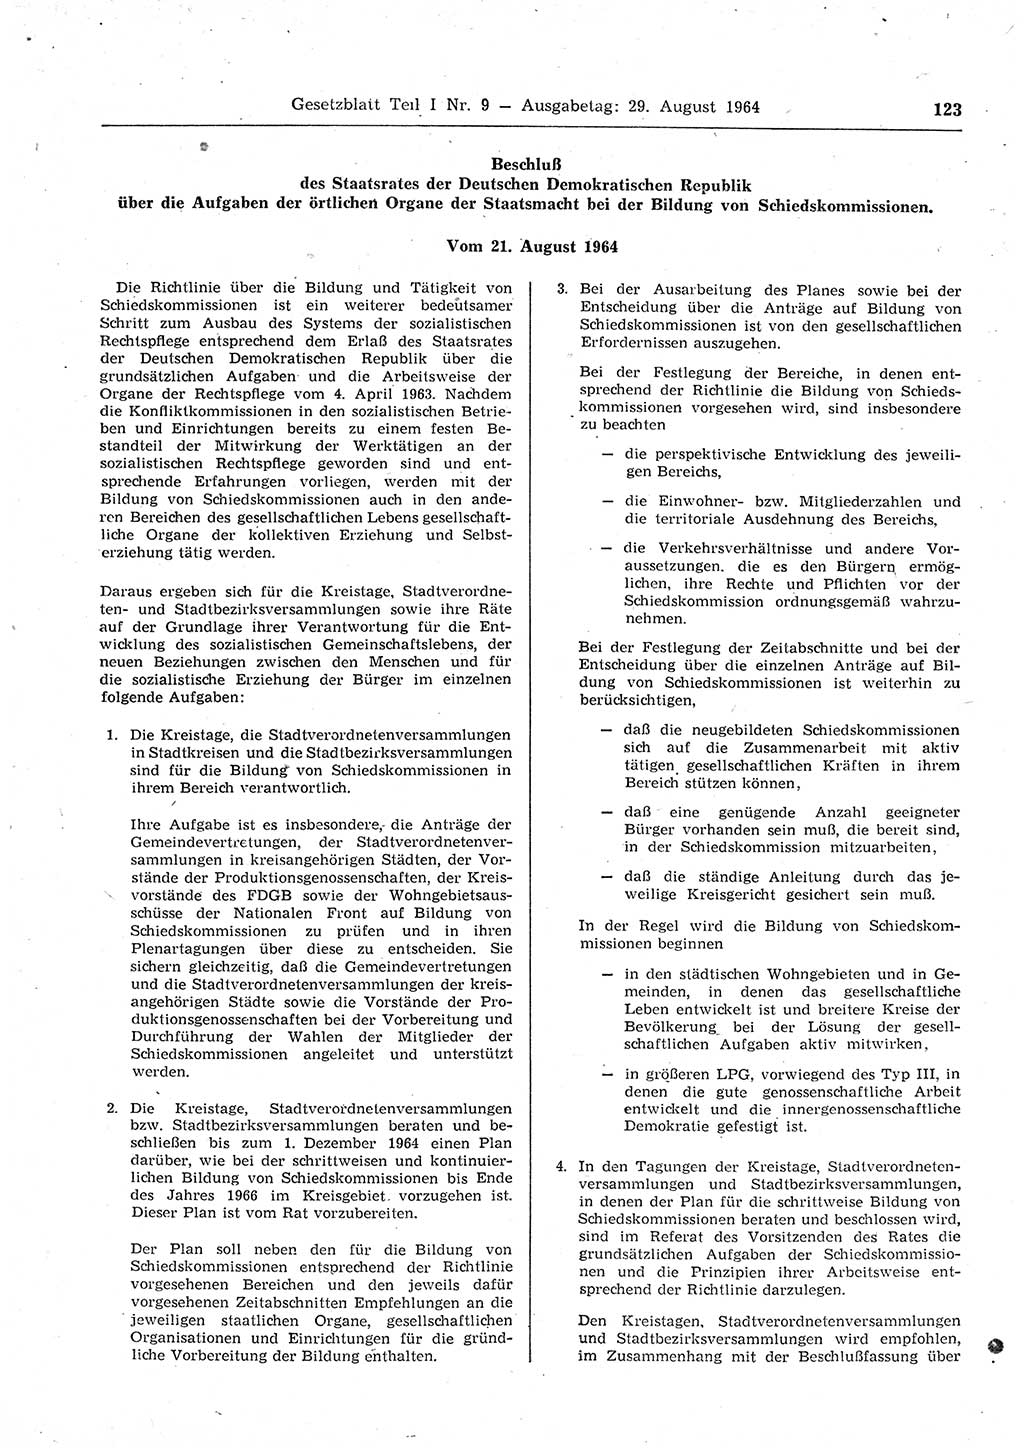 Gesetzblatt (GBl.) der Deutschen Demokratischen Republik (DDR) Teil Ⅰ 1964, Seite 123 (GBl. DDR Ⅰ 1964, S. 123)